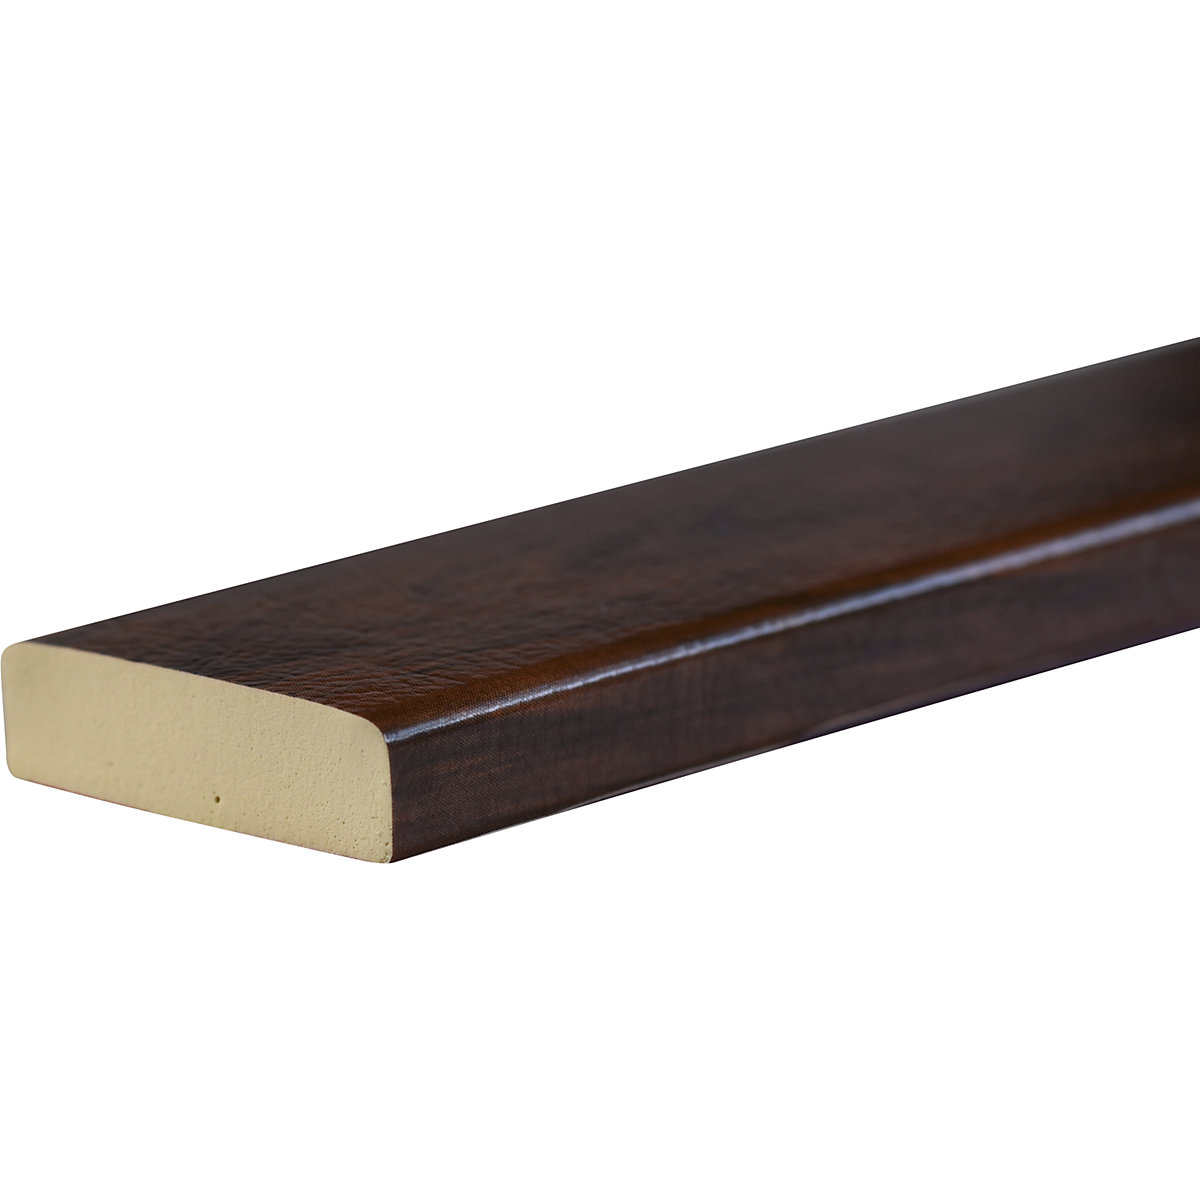 Protection des surfaces Knuffi® – SHG, type S, pièce de 1 mètre, façon bois cerise